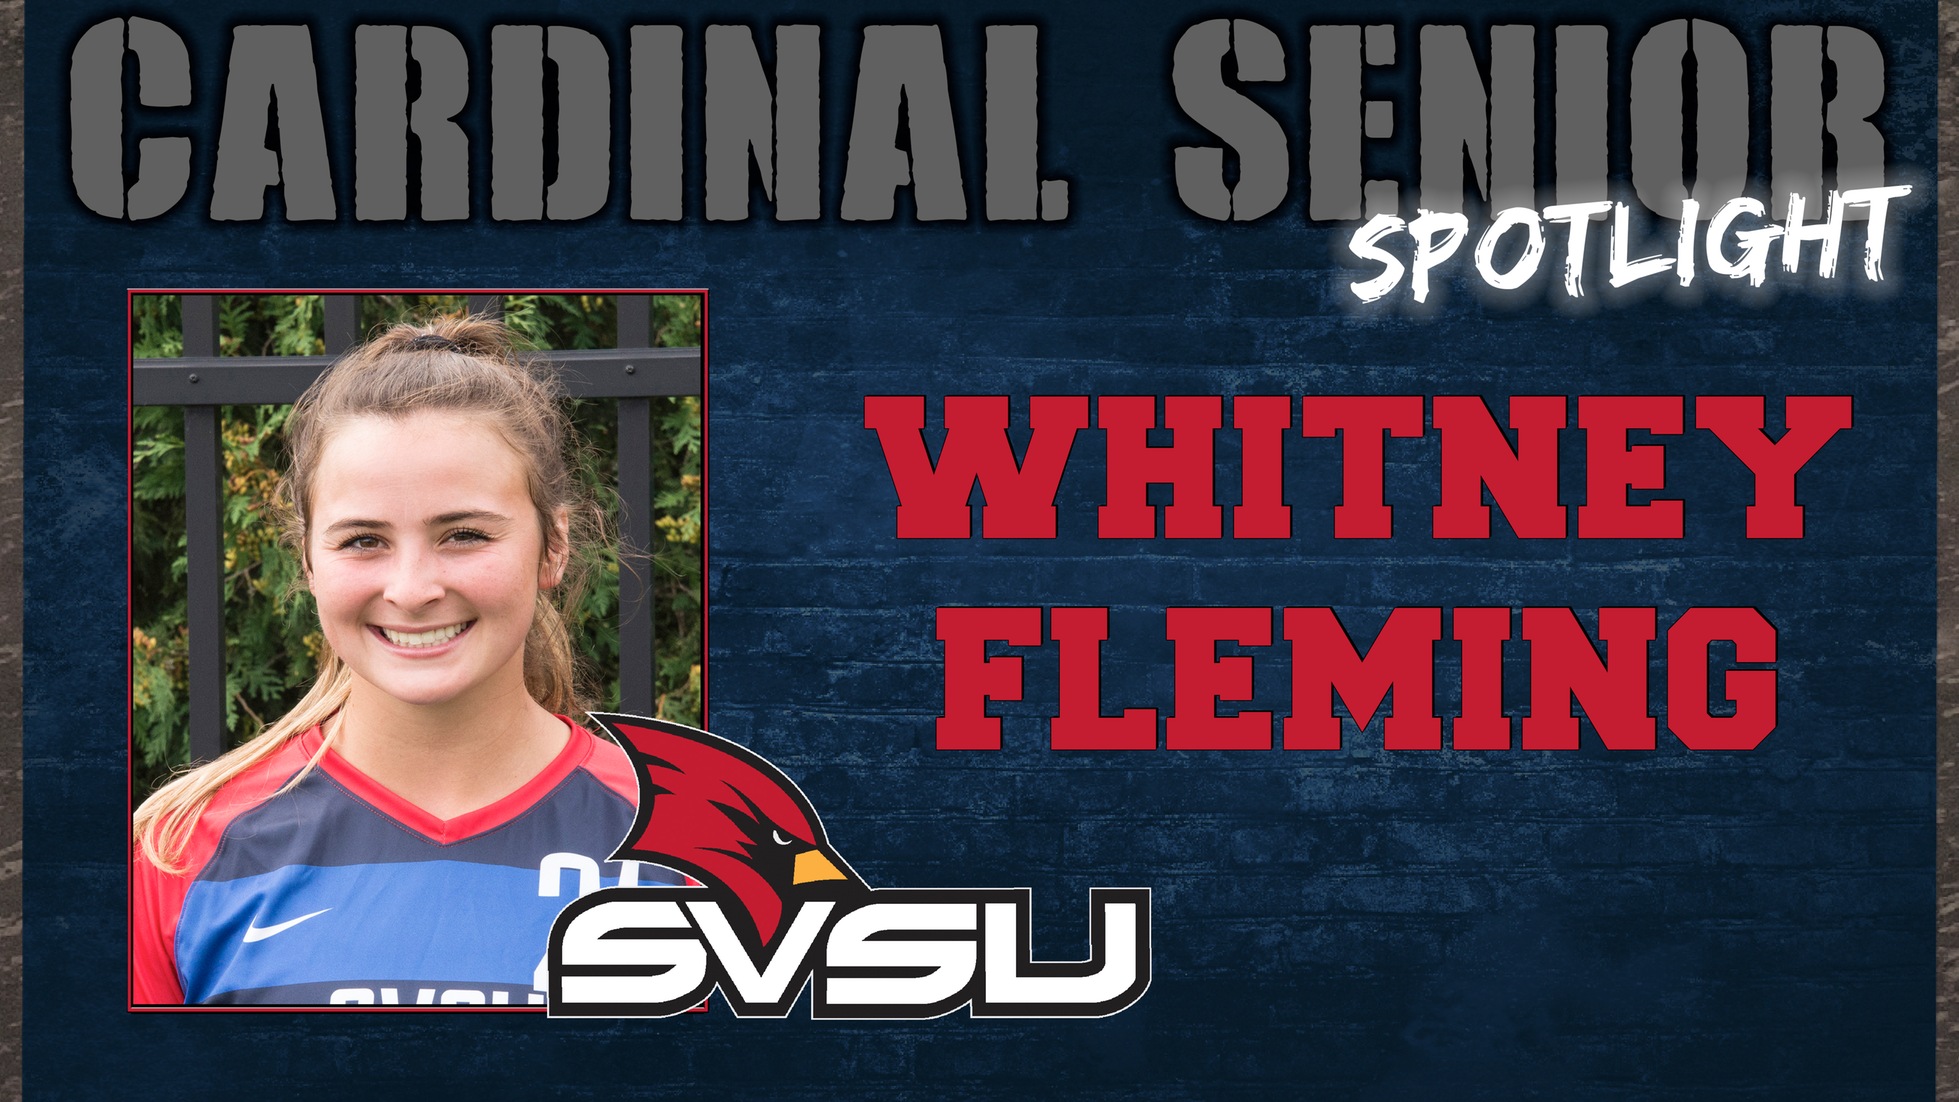 SVSU Cardinal Senior Spotlight - Whitney Fleming